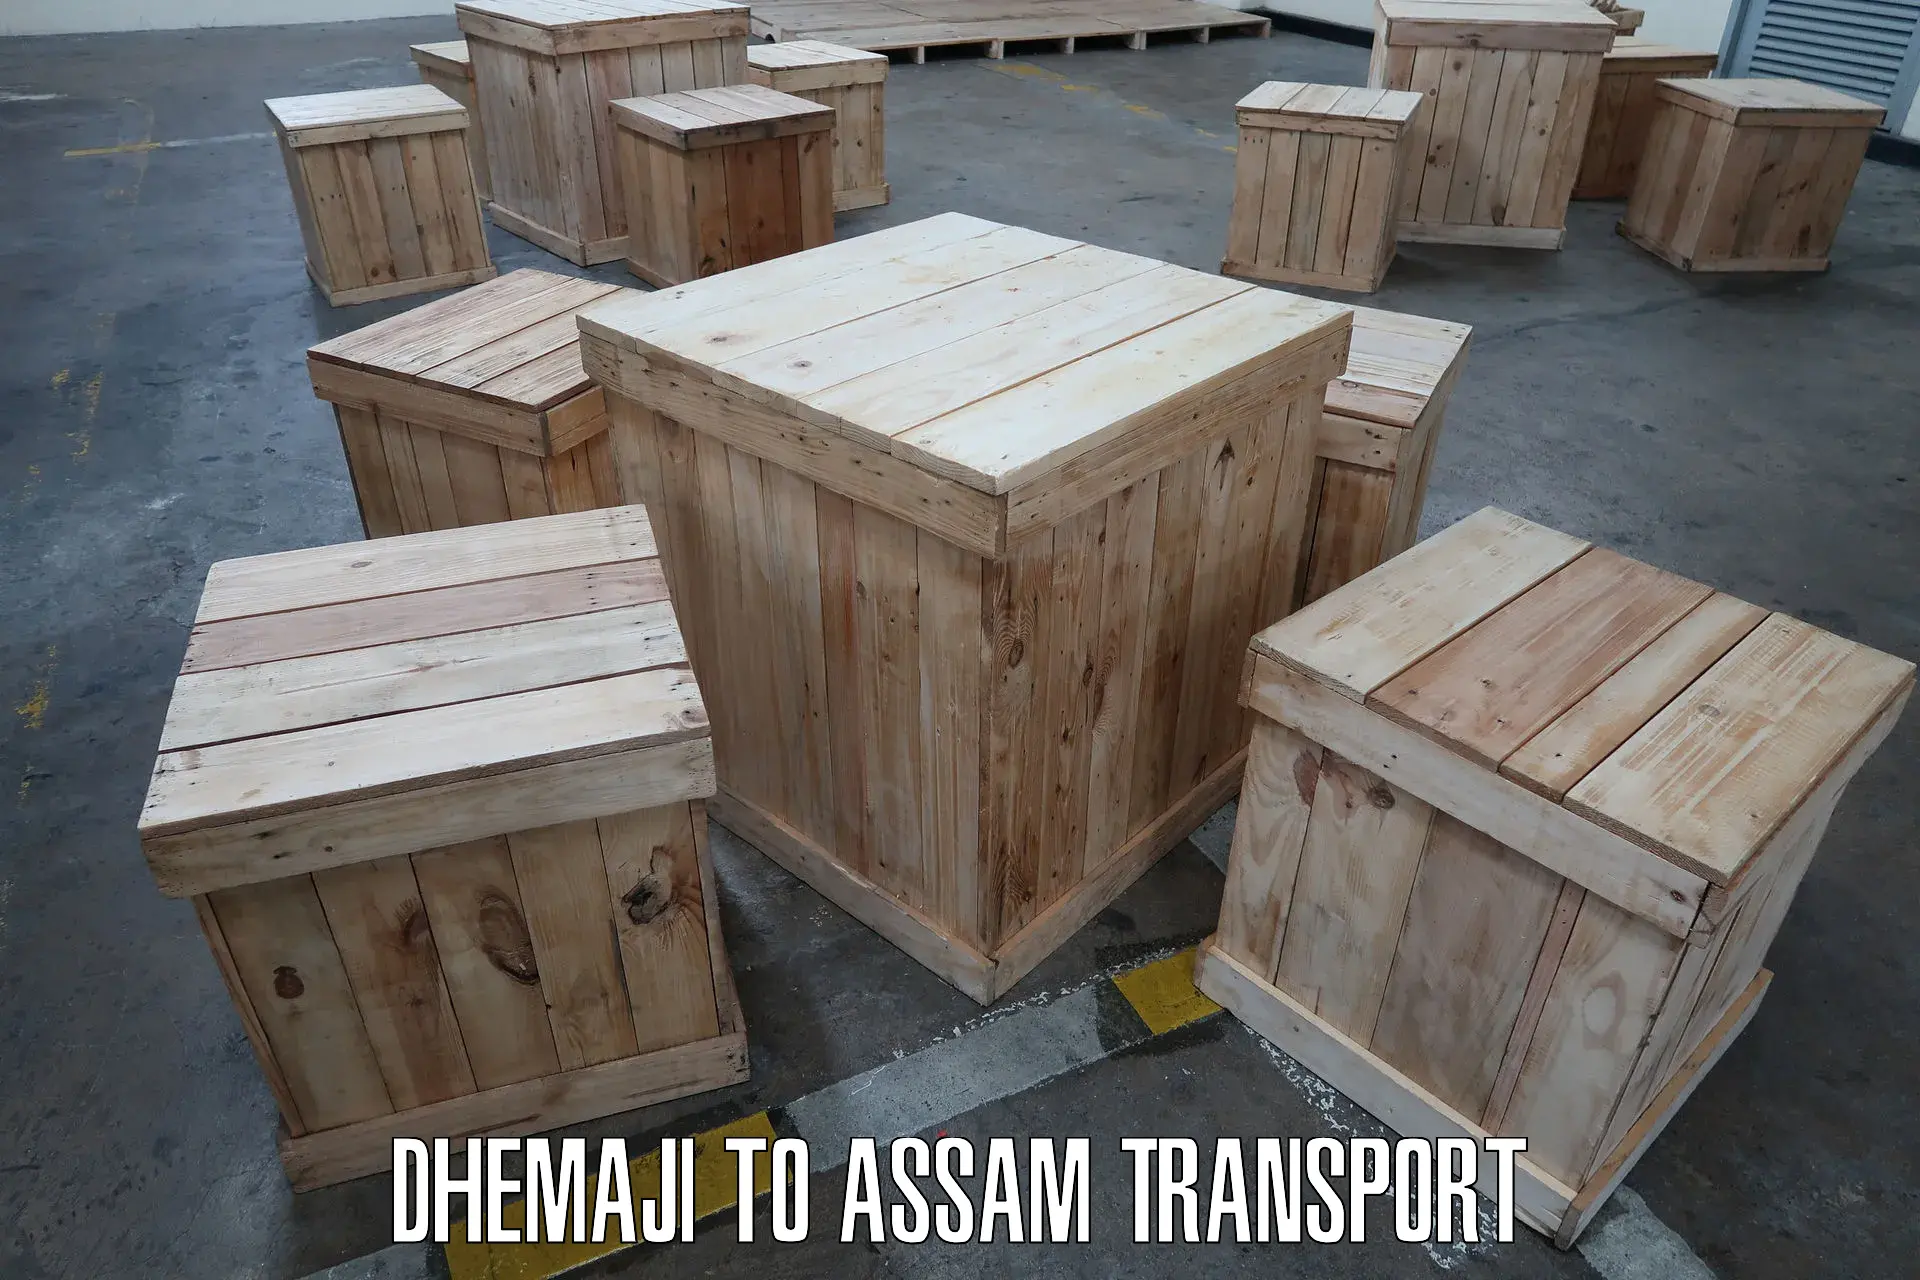 Two wheeler parcel service Dhemaji to Dhupdhara